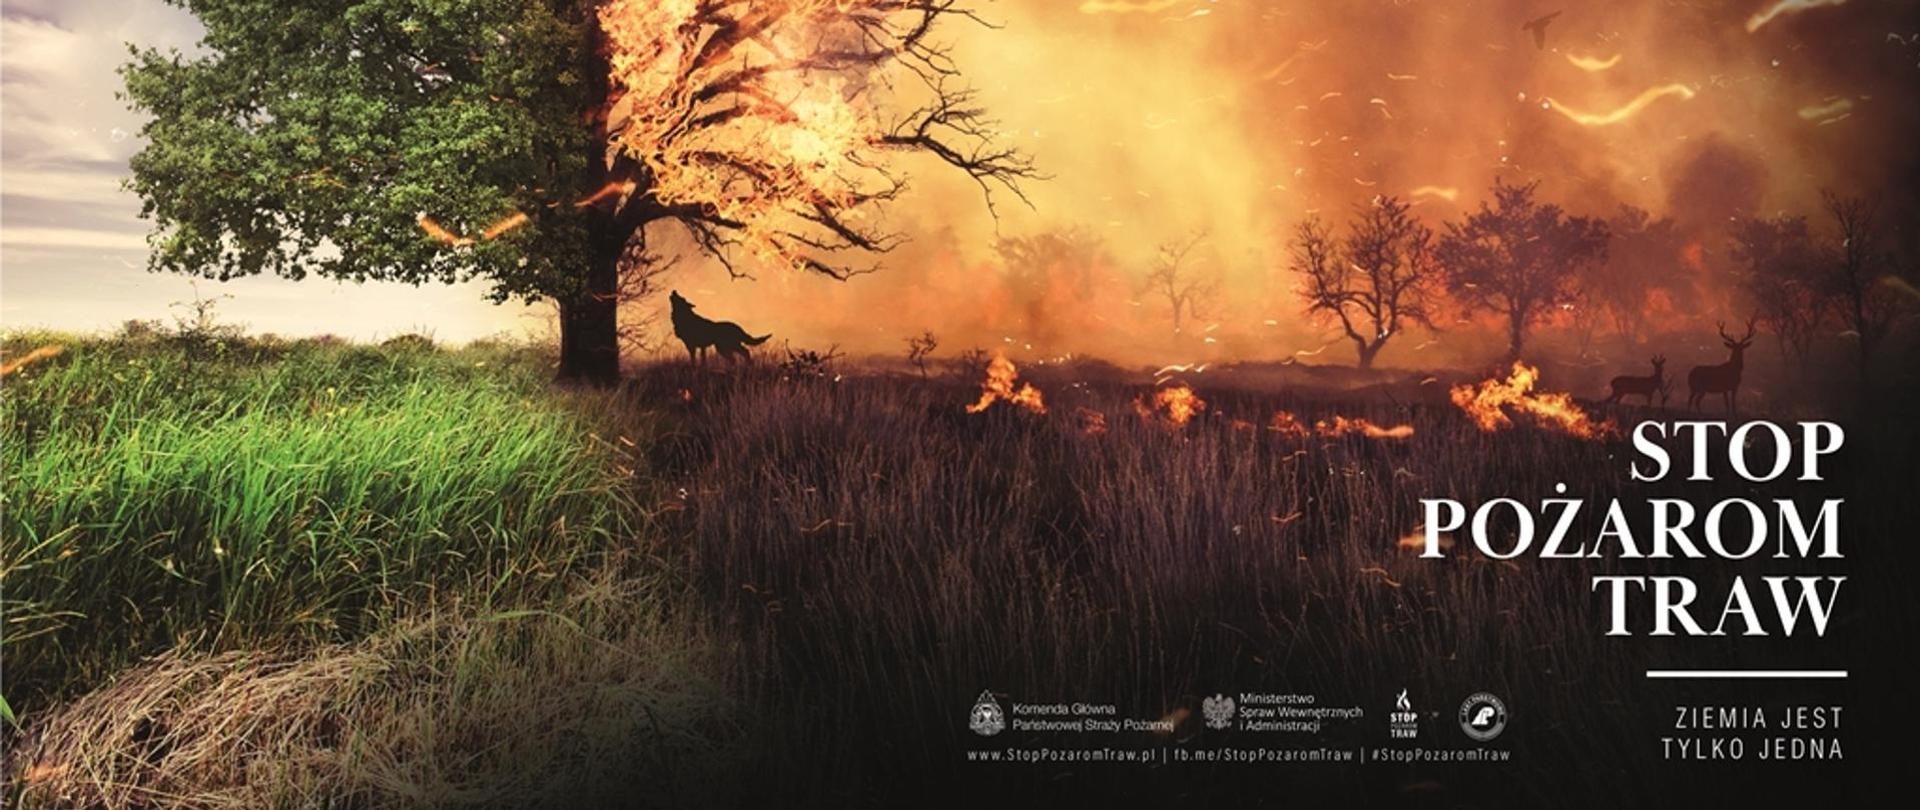 Na zdjęciu widać łąkę i drzewo przed i w trakcie pożaru